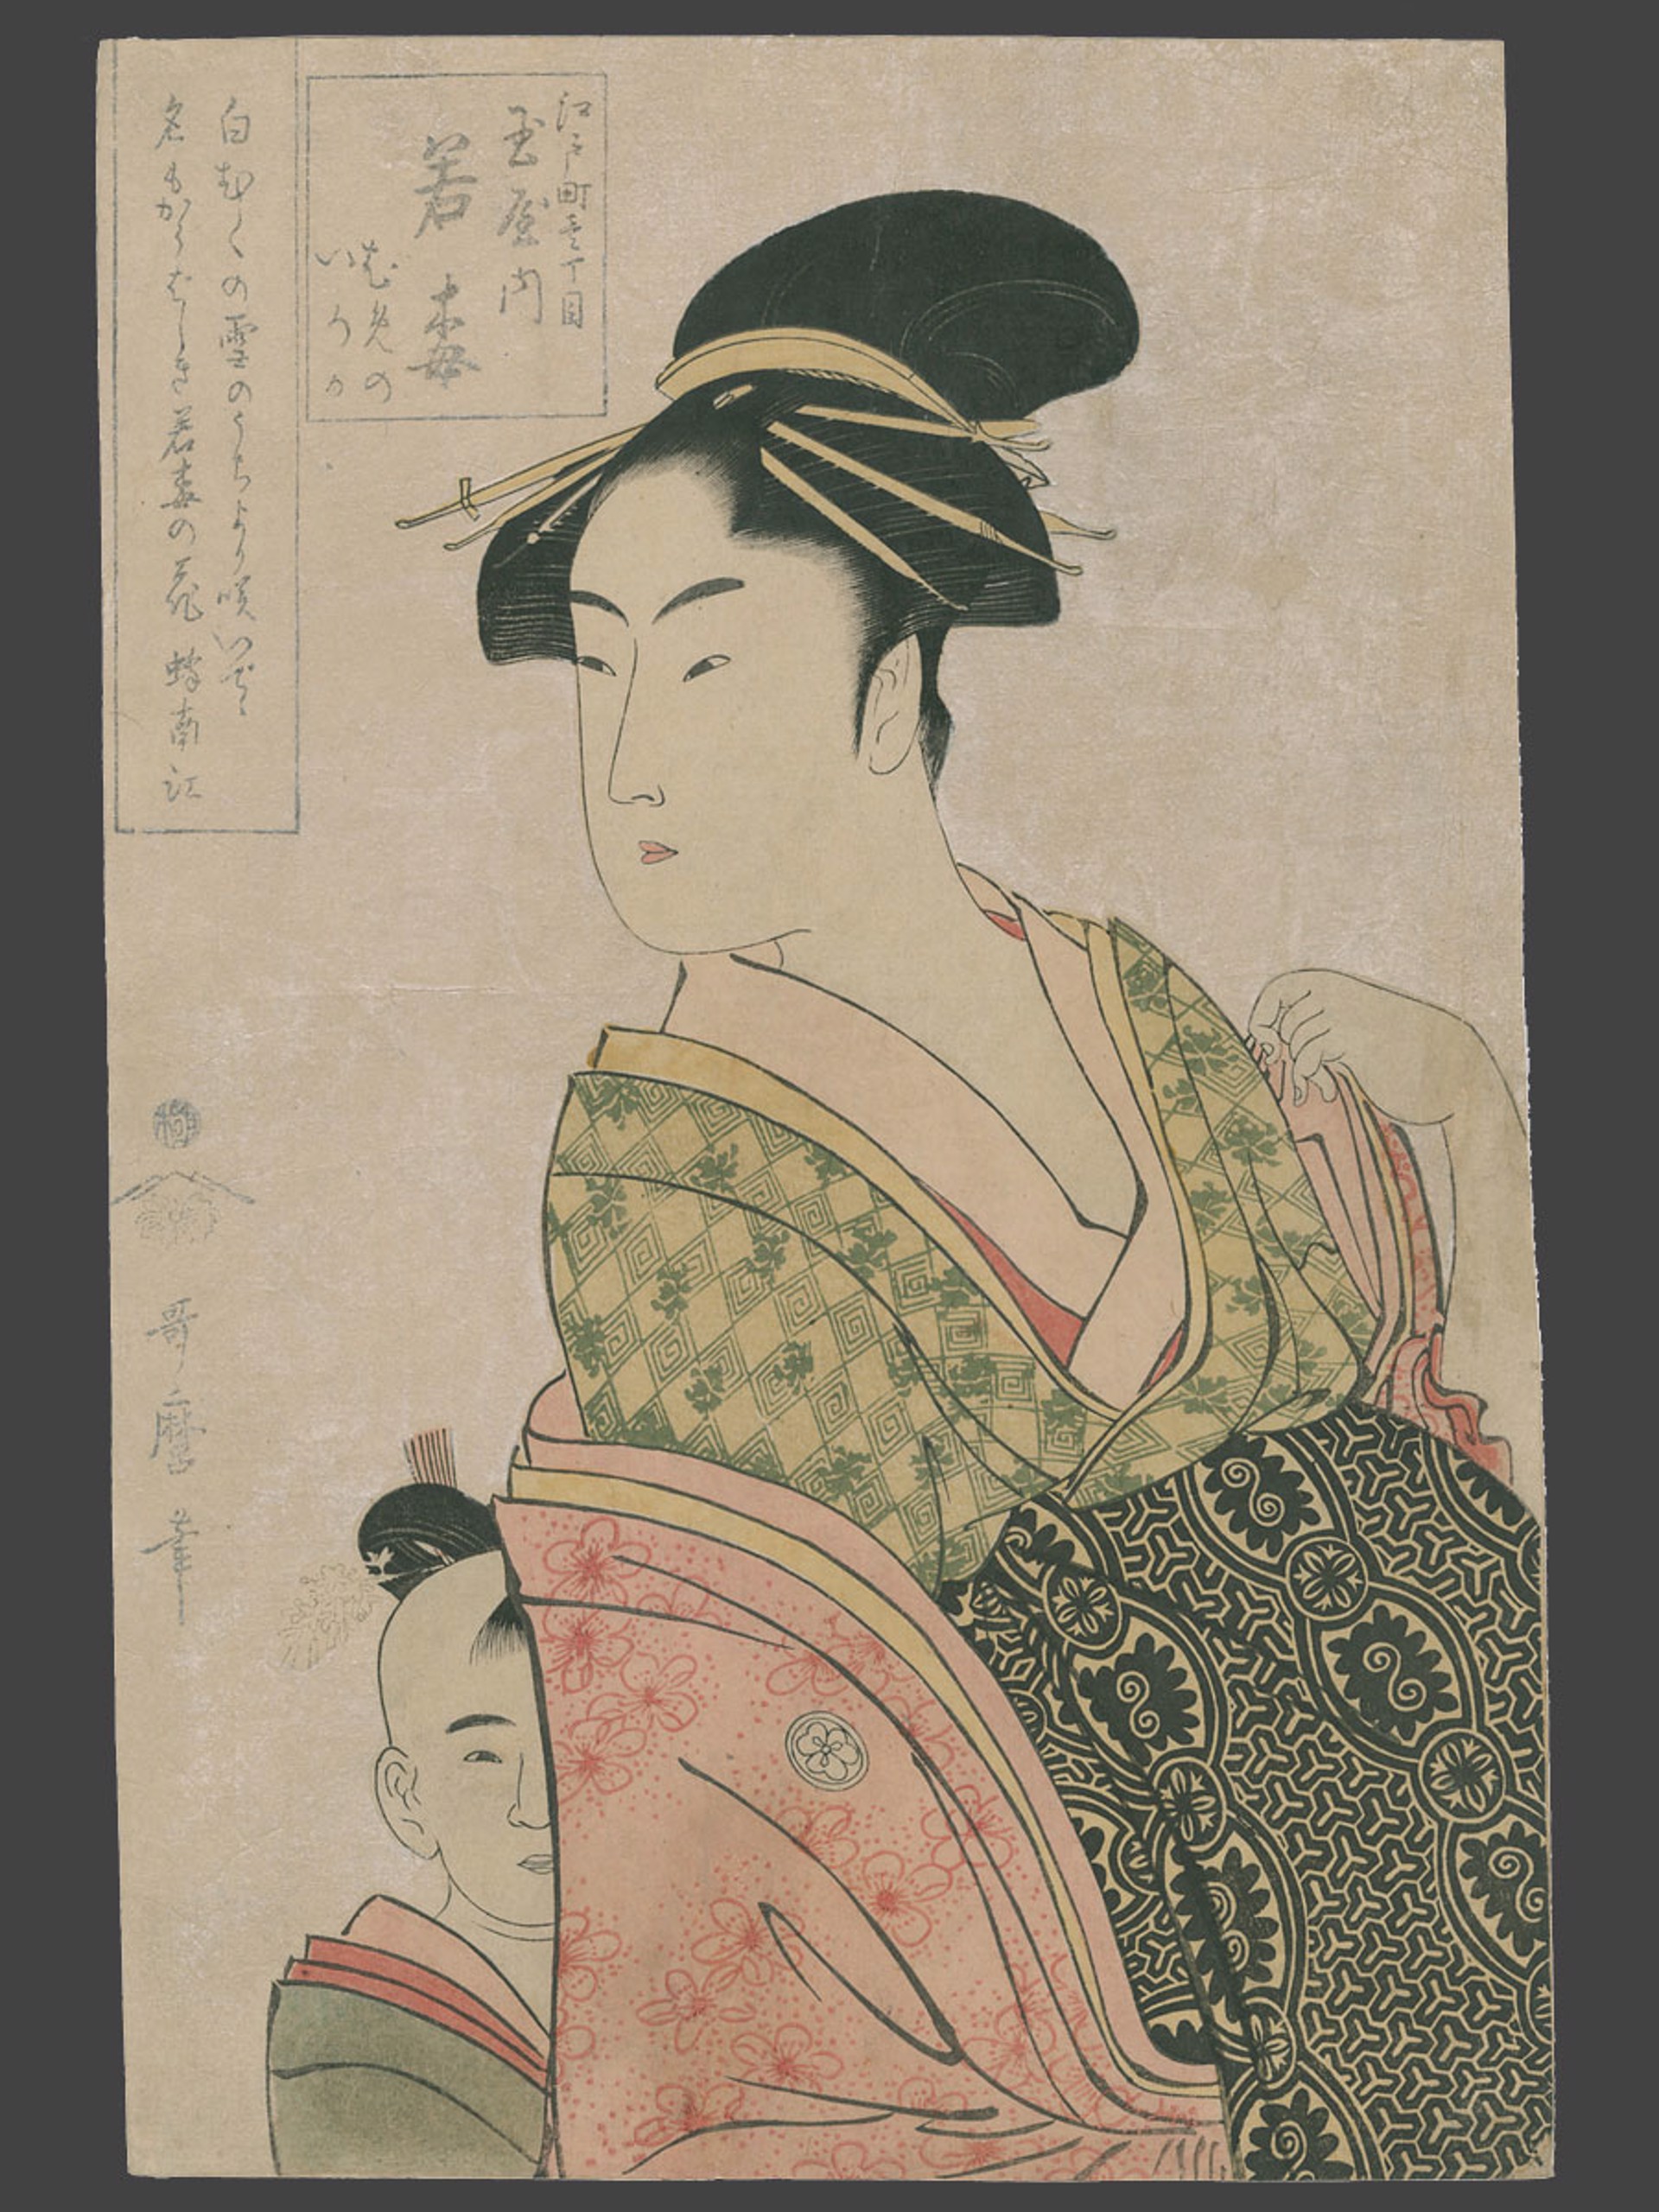 Wakaume of the Tamaya House by Utamaro